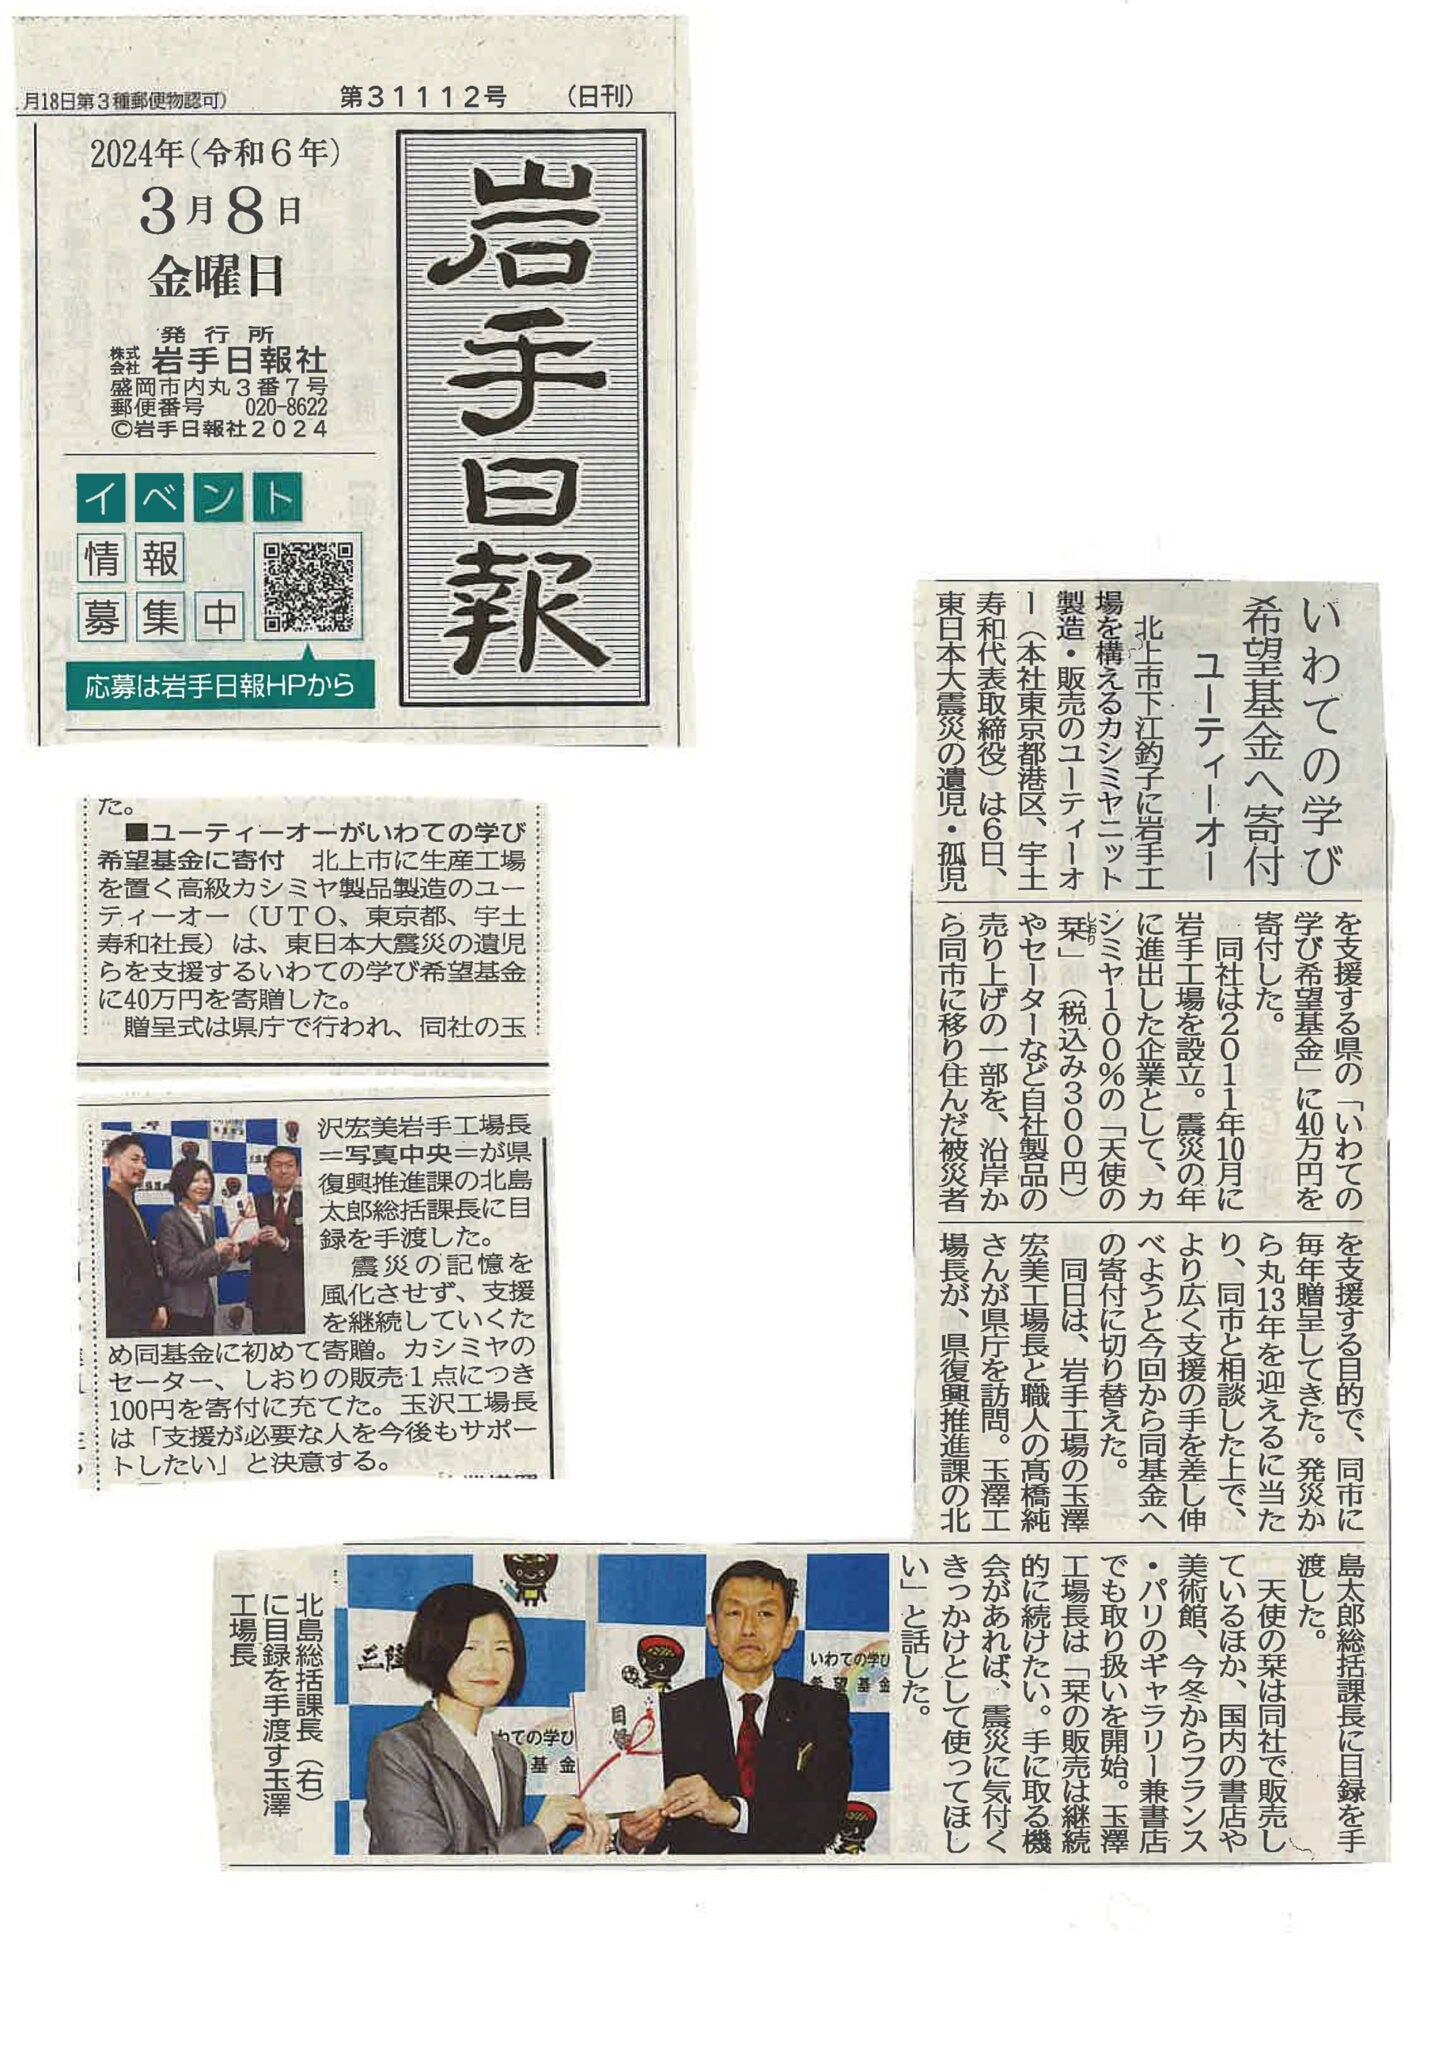 <!--⑨【新聞・岩手日報】いわての学び希望基金へ寄付-->[Newspaper, Iwate Nippo] Donation to the Iwate Learning Hope Fund